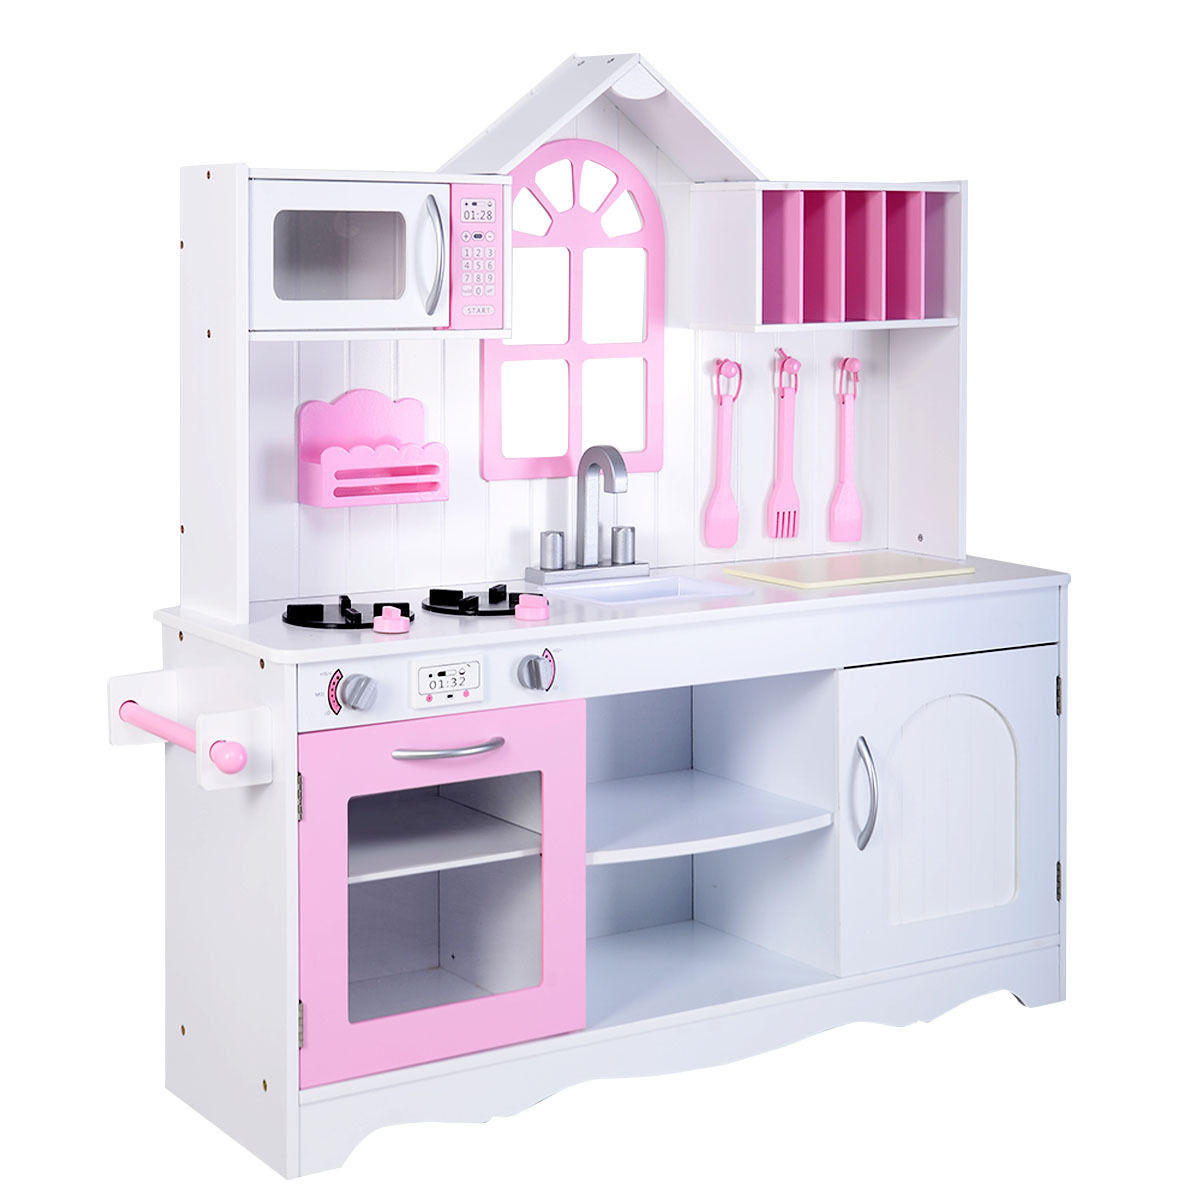 wooden kitchen set for girls